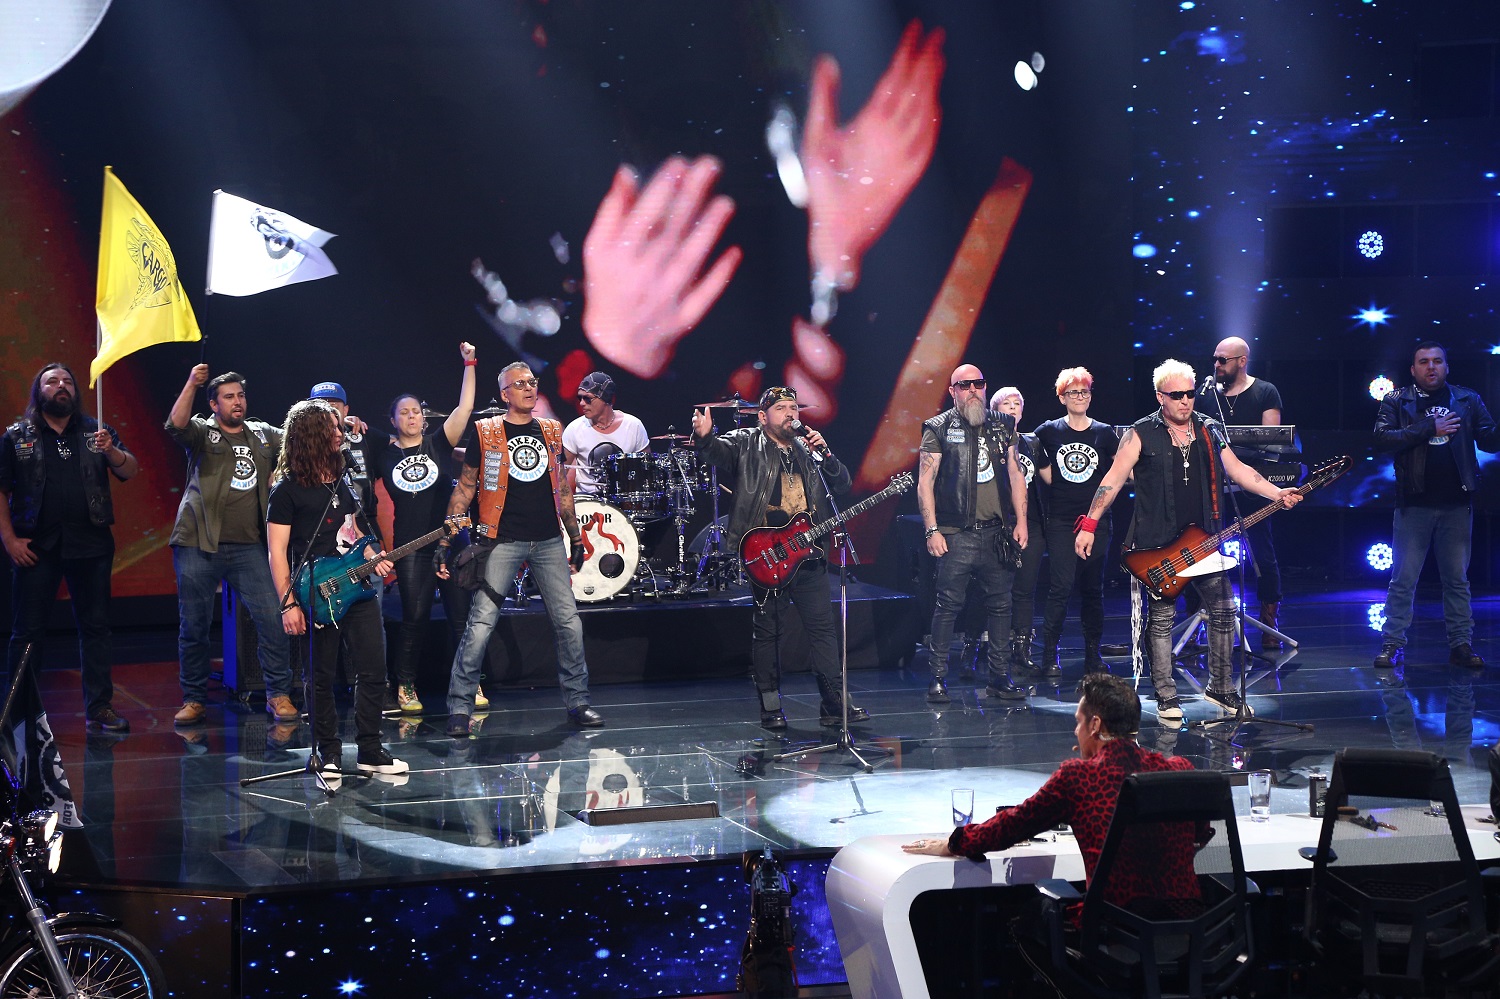 Nu poate vorbi, dar cântă! Un concurent i-a uluit pe jurații X Factor: Ce putere are muzica!